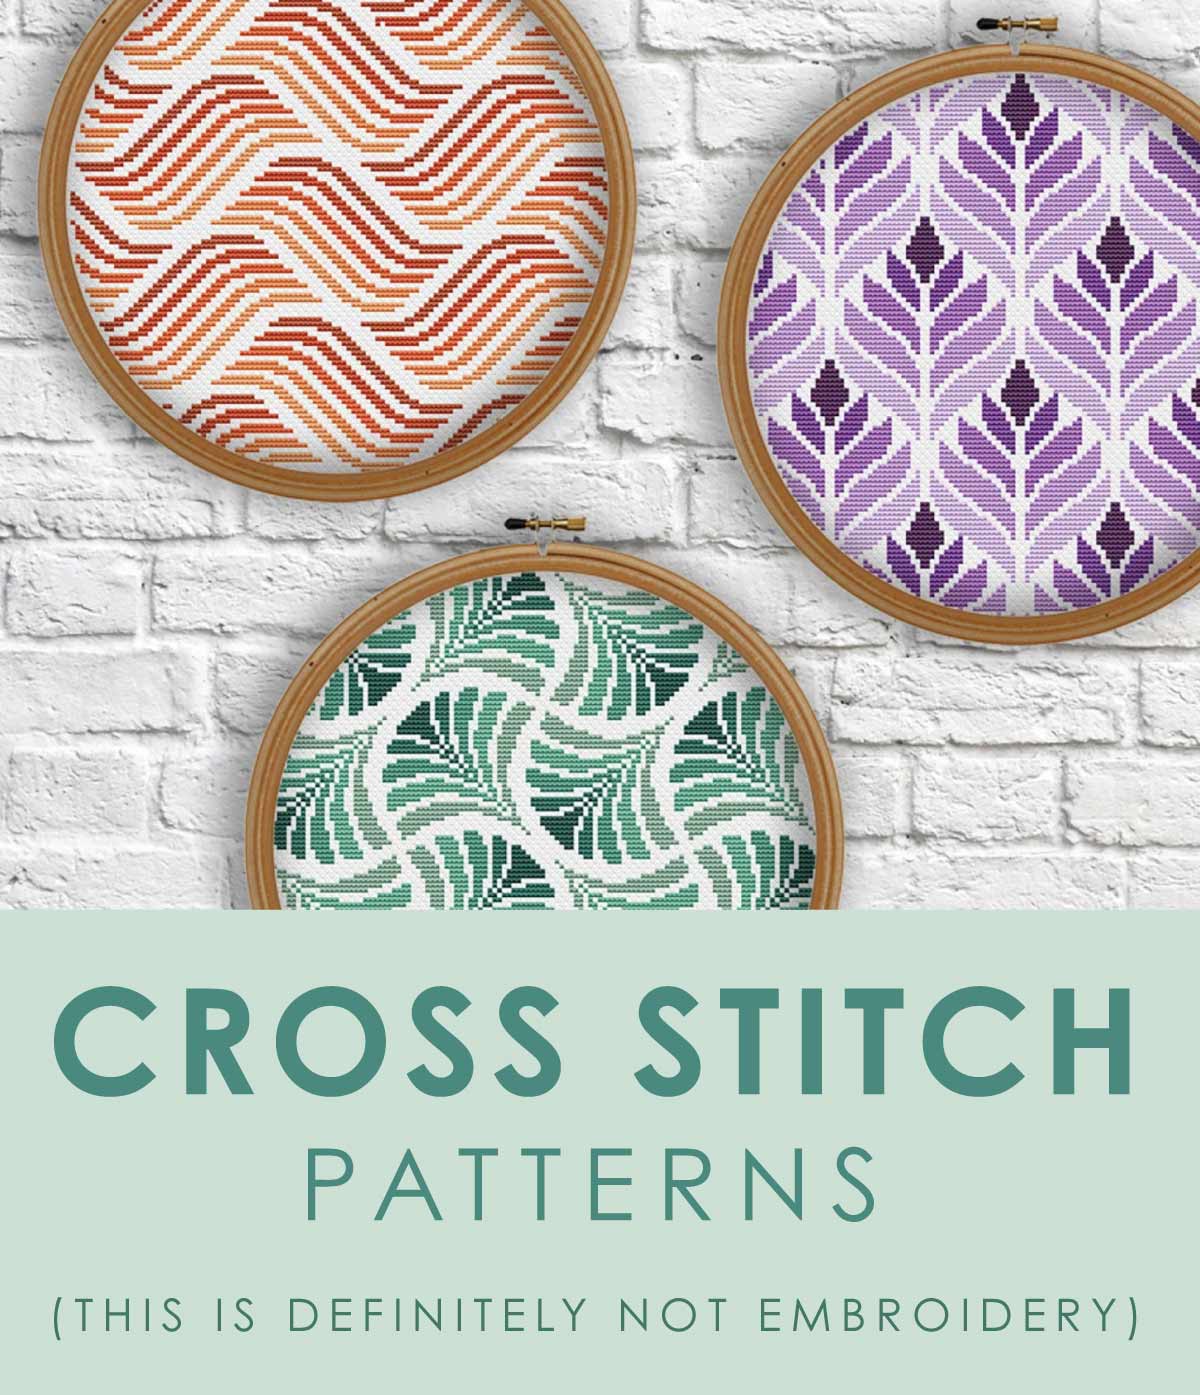 Cross Stitch Patterns